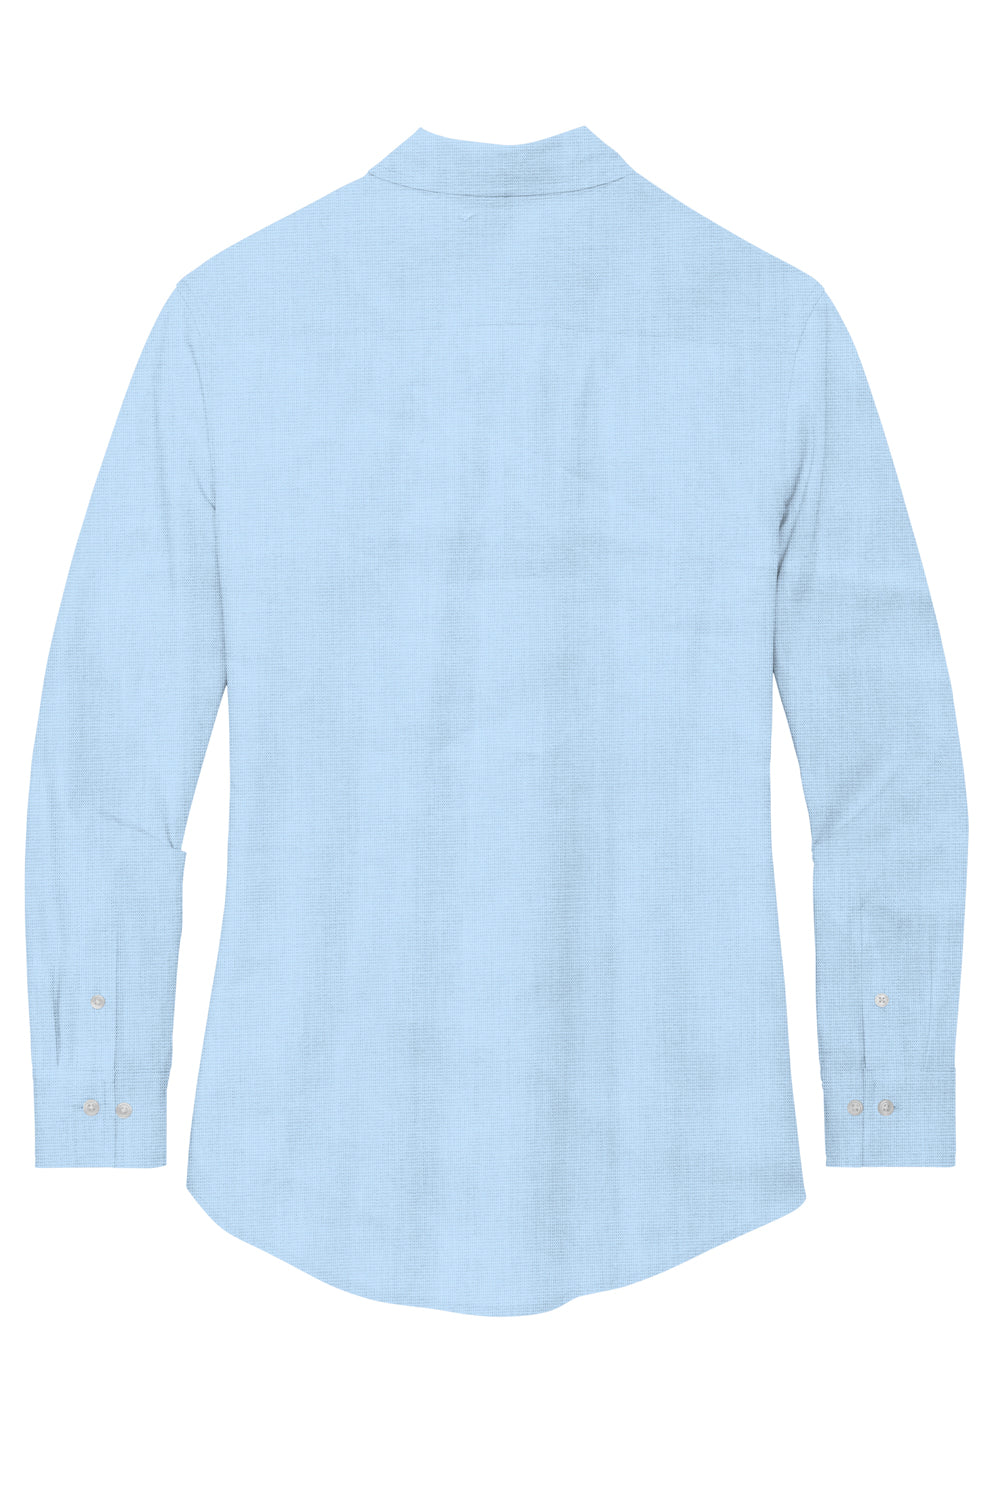 Mercer+Mettle MM2001 Stretch Woven Long Sleeve Button Down Shirt Air Blue Flat Back